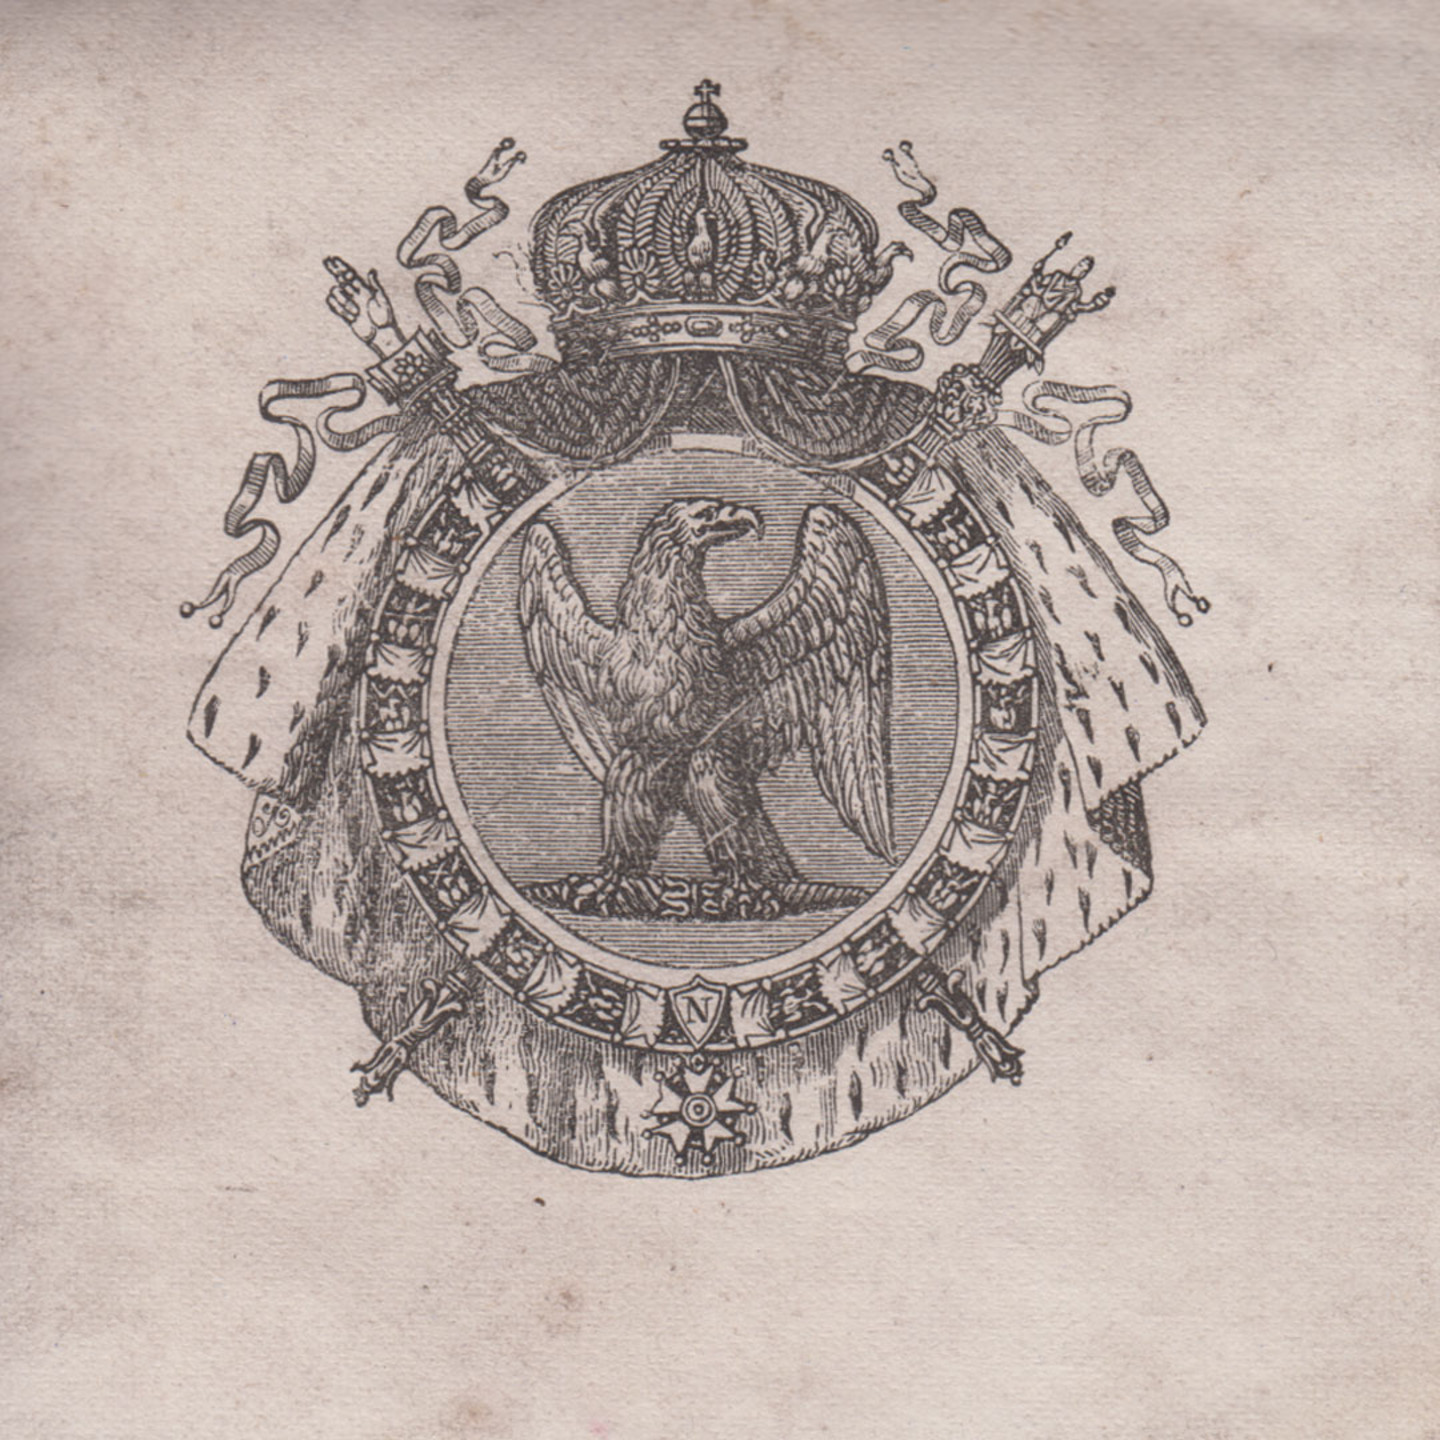 Schwarz-Weiß-Druck: Gekröntes Wappen umrahmt mit Hermelinfell. Ein rundes, mit Ornamenten verziertes Schild in der Mitte zeigt einen Adler mit erhobenen Schwingen.